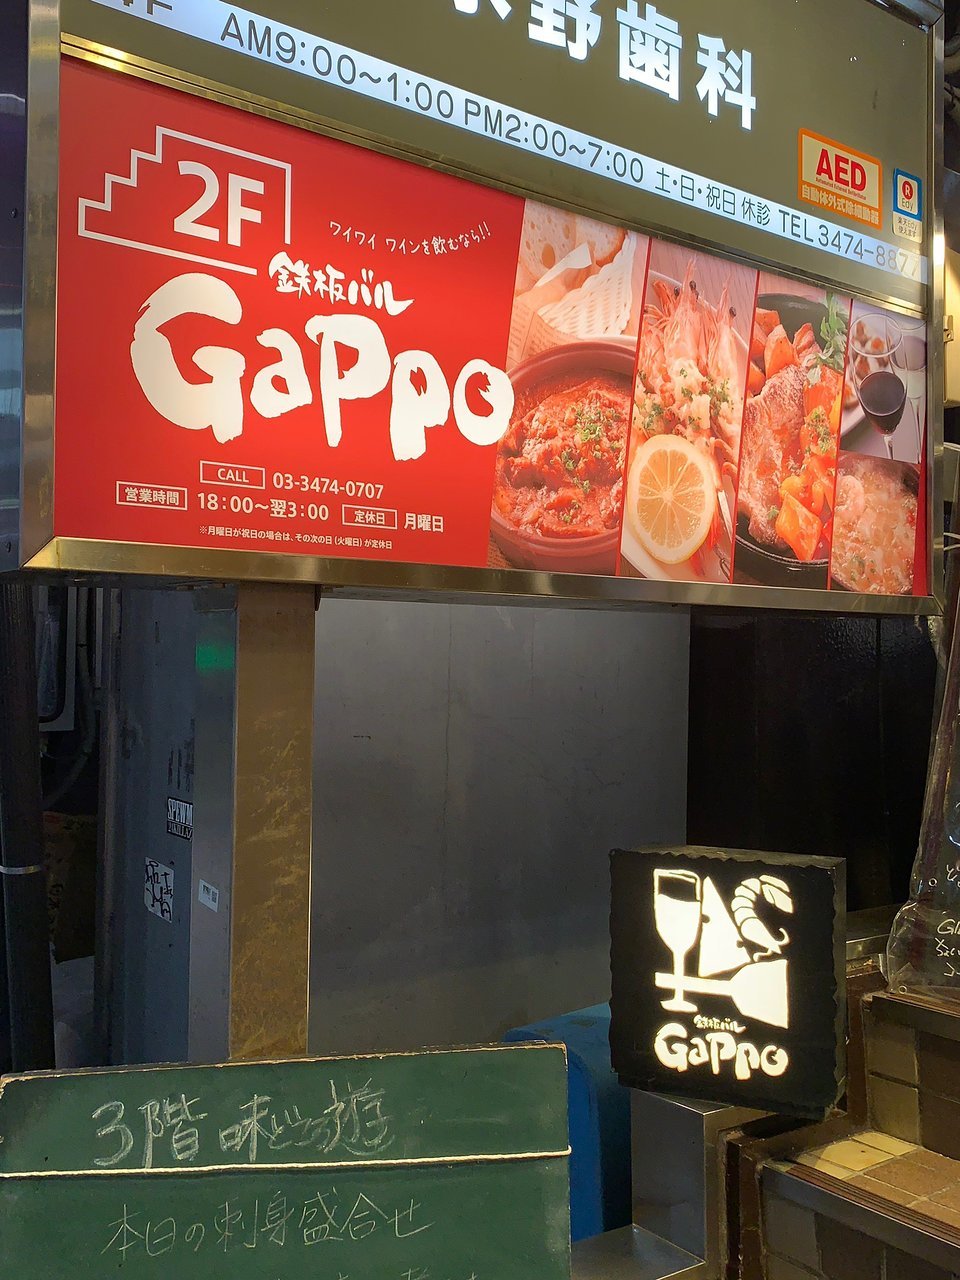 Teppan Bar Gappo